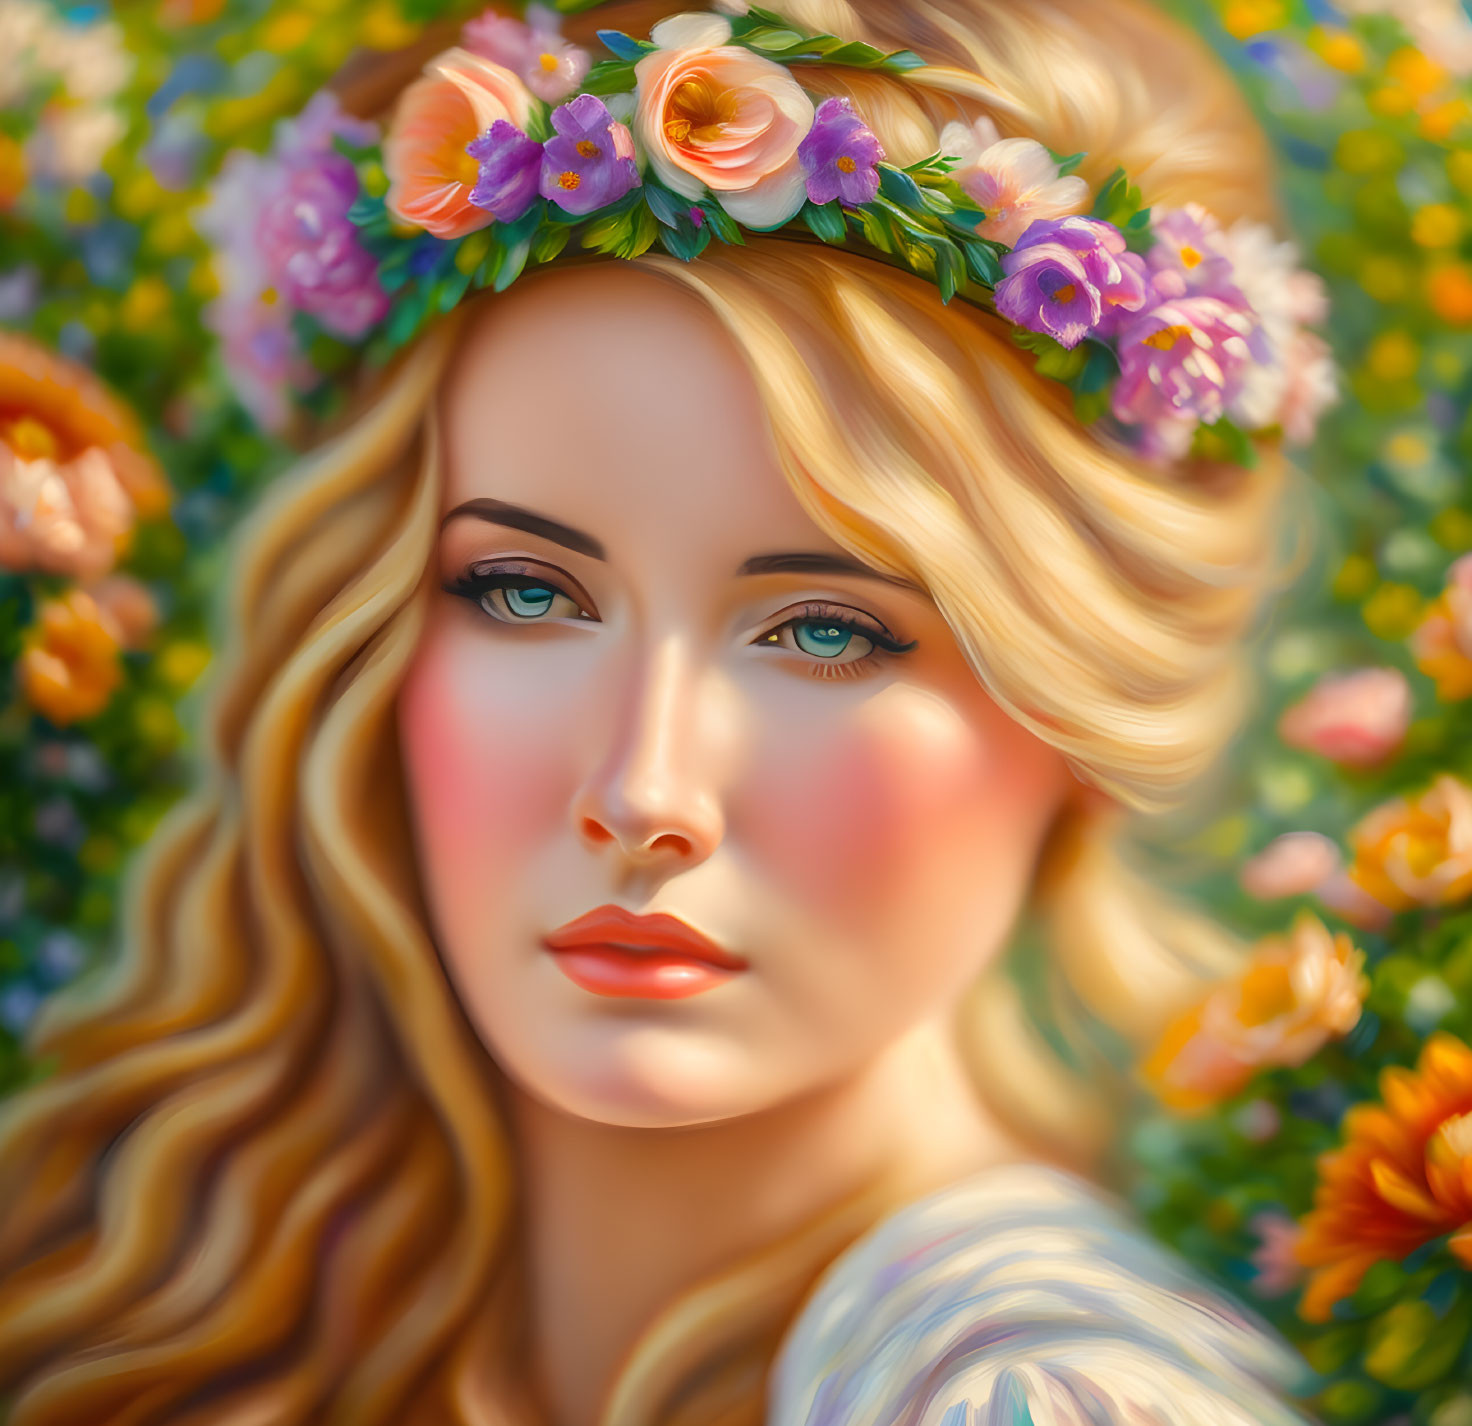 Floral Crown Portrait in Warm Tones